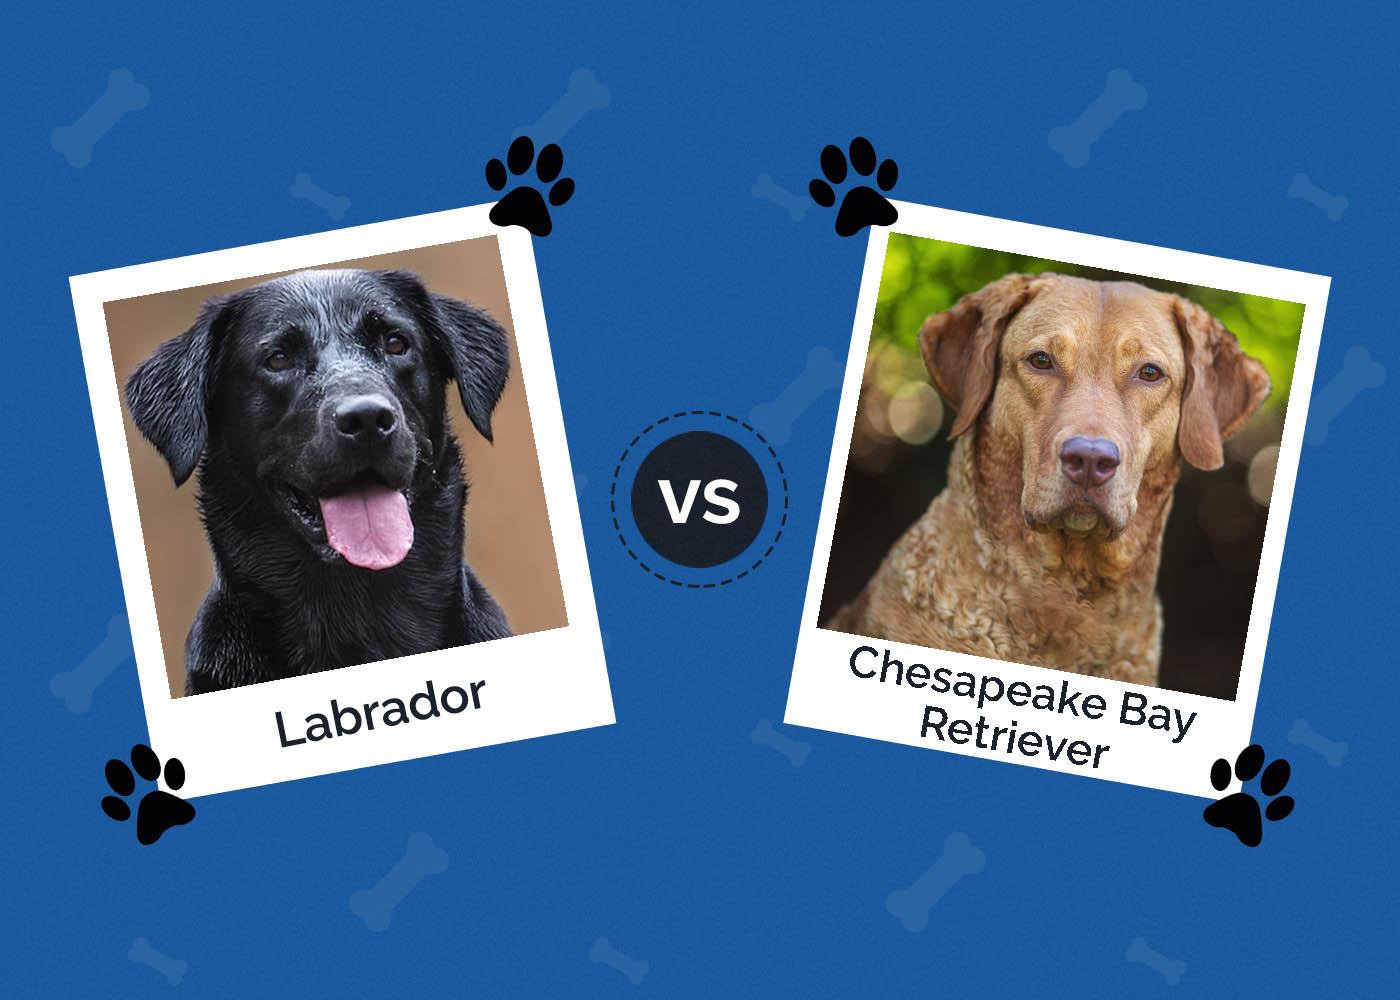 Labrador vs Chesapeake Bay Retriever